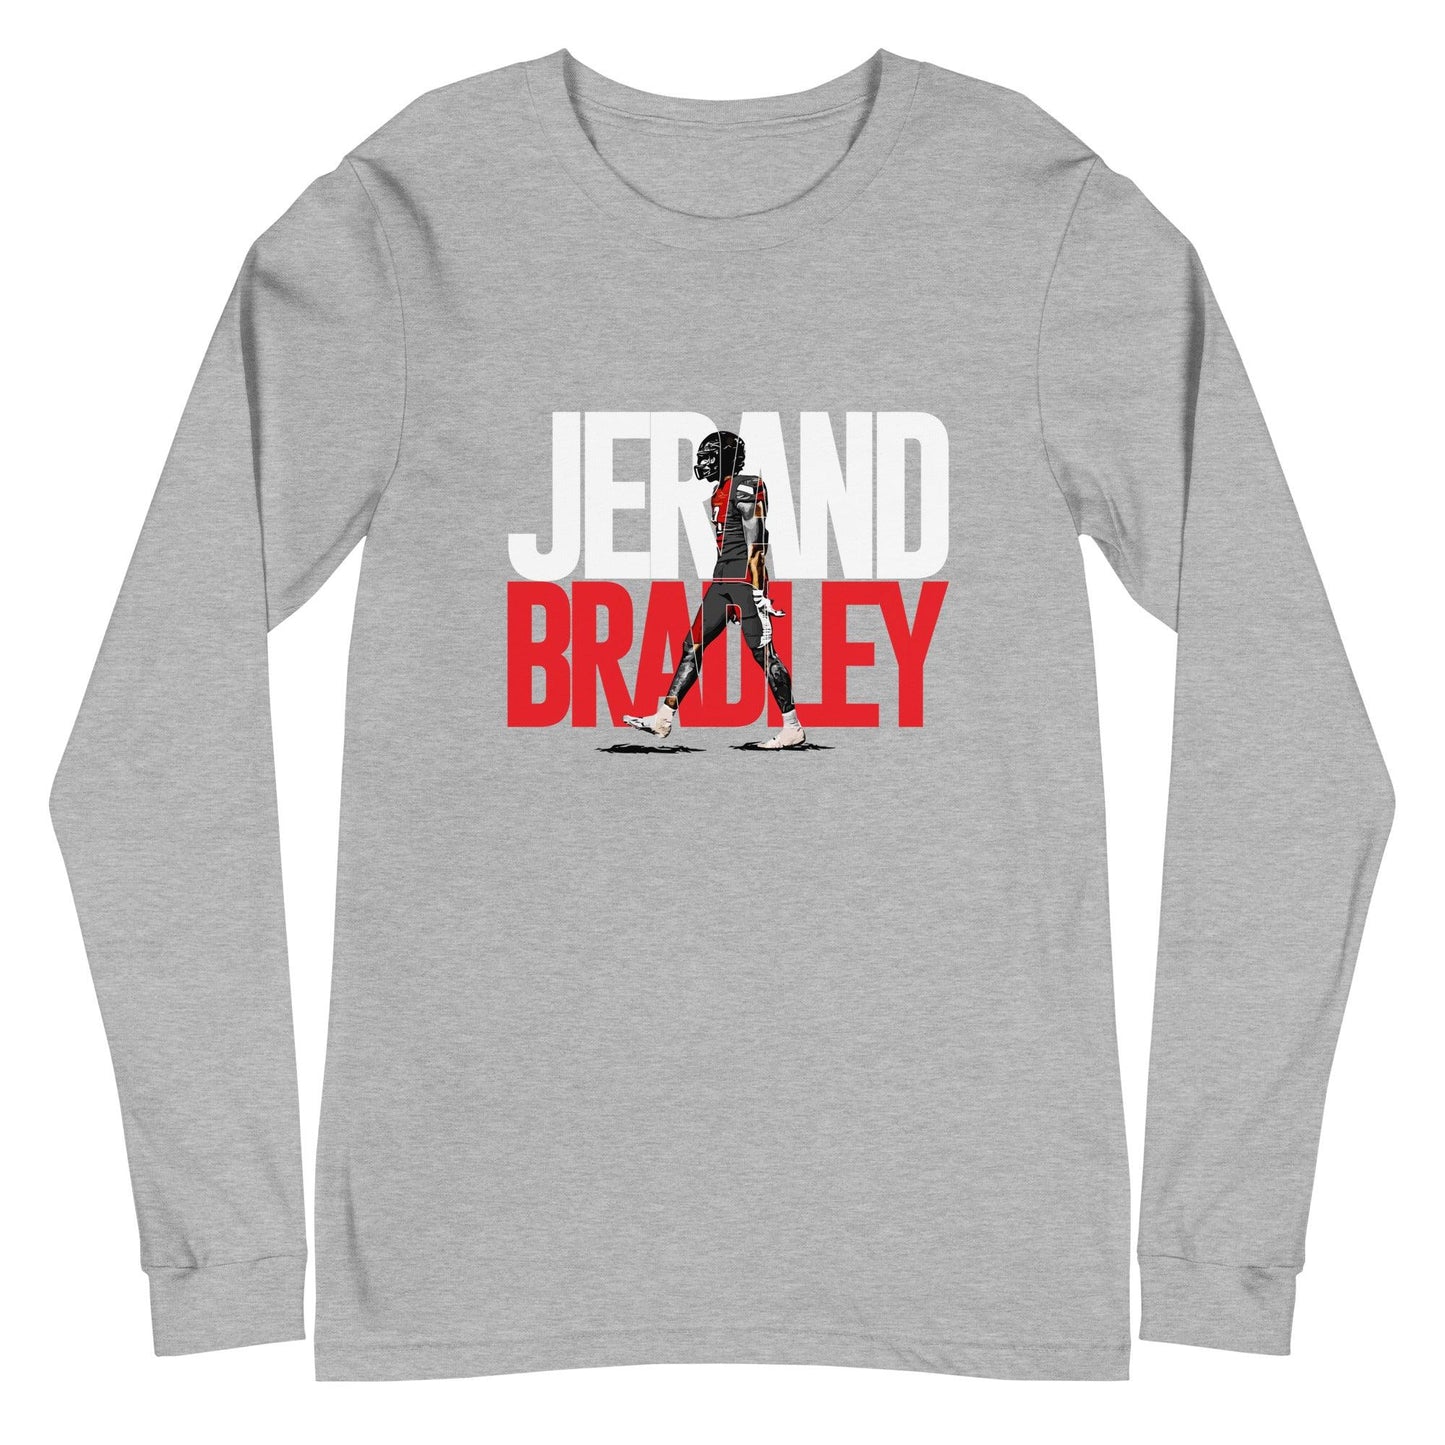 Jerand Bradley "Gameday" Long Sleeve Tee - Fan Arch